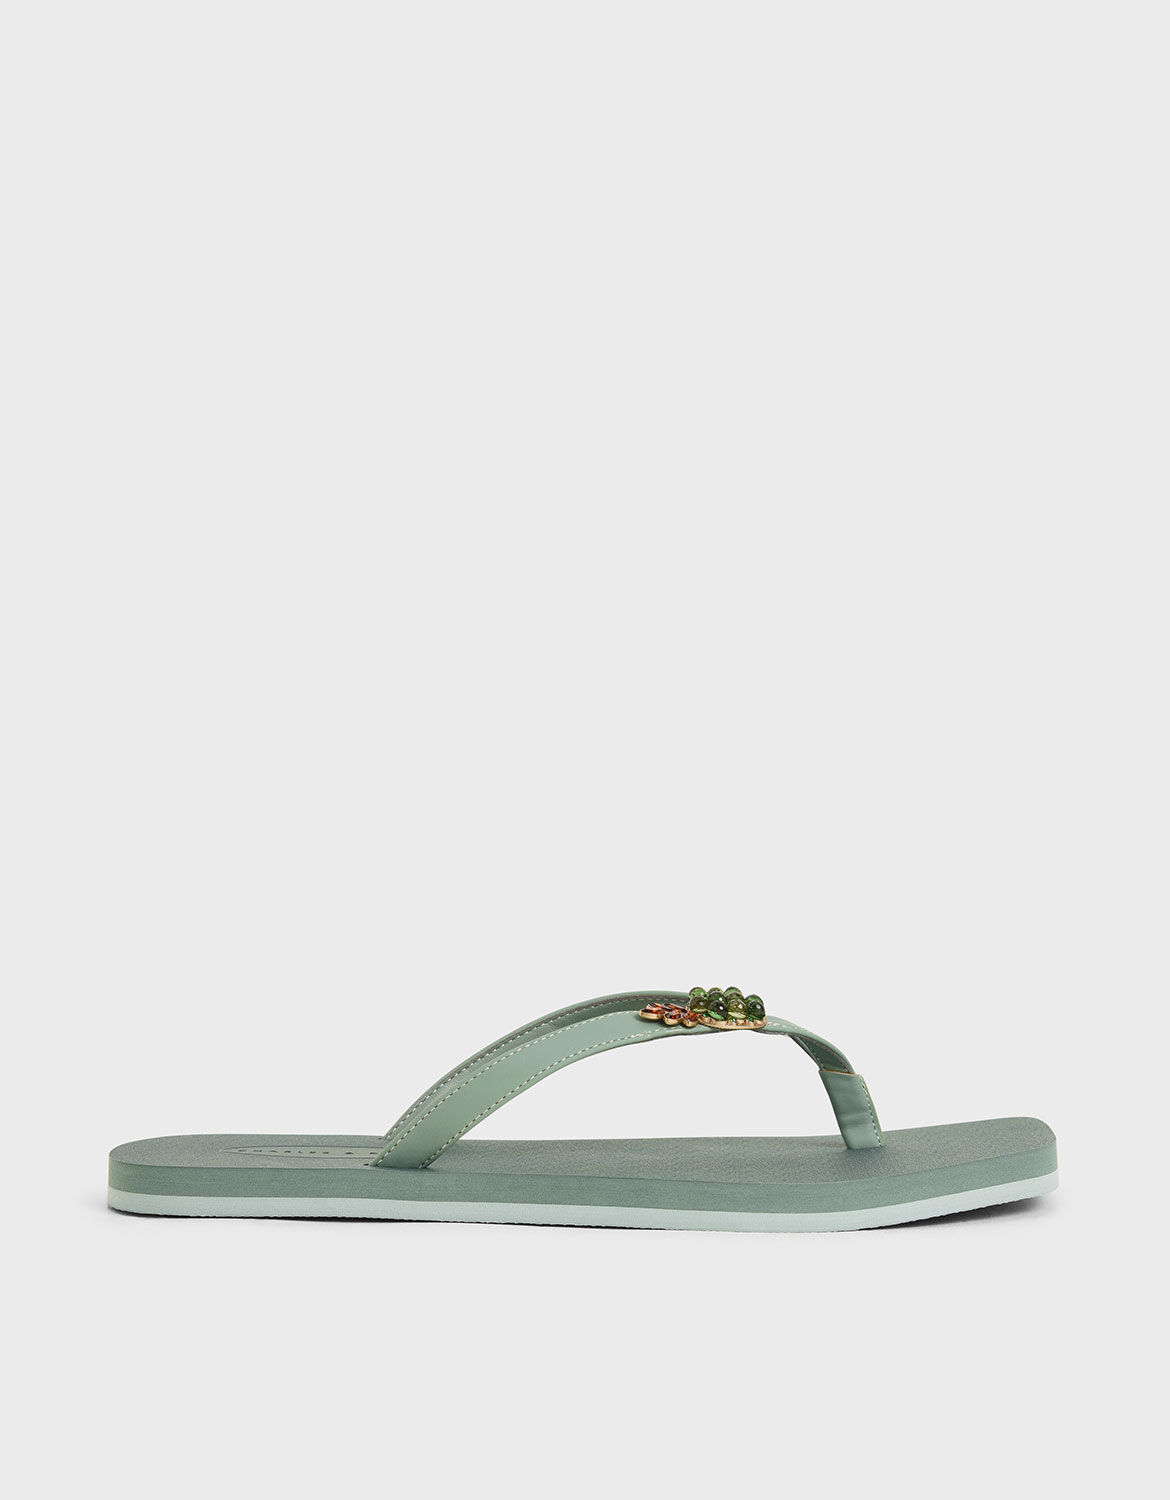 green thong sandals